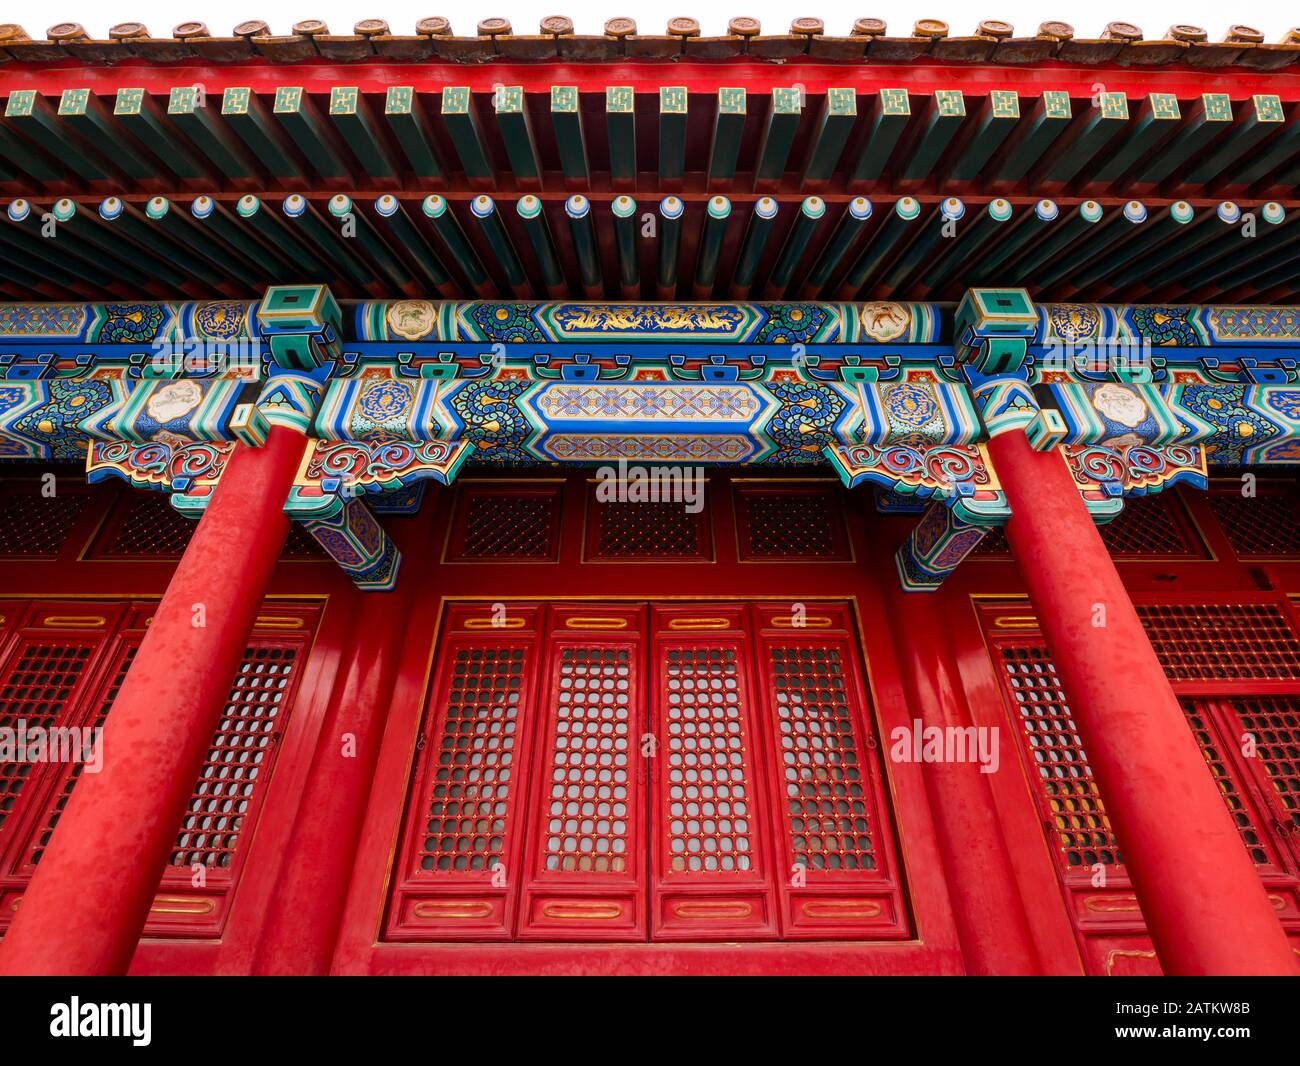 Reich dekoriertes Gebäude in der Halle des Obersten Harmoniehofes, Außengericht, Verbotene Stadt, Peking, China, Asien Stockfoto